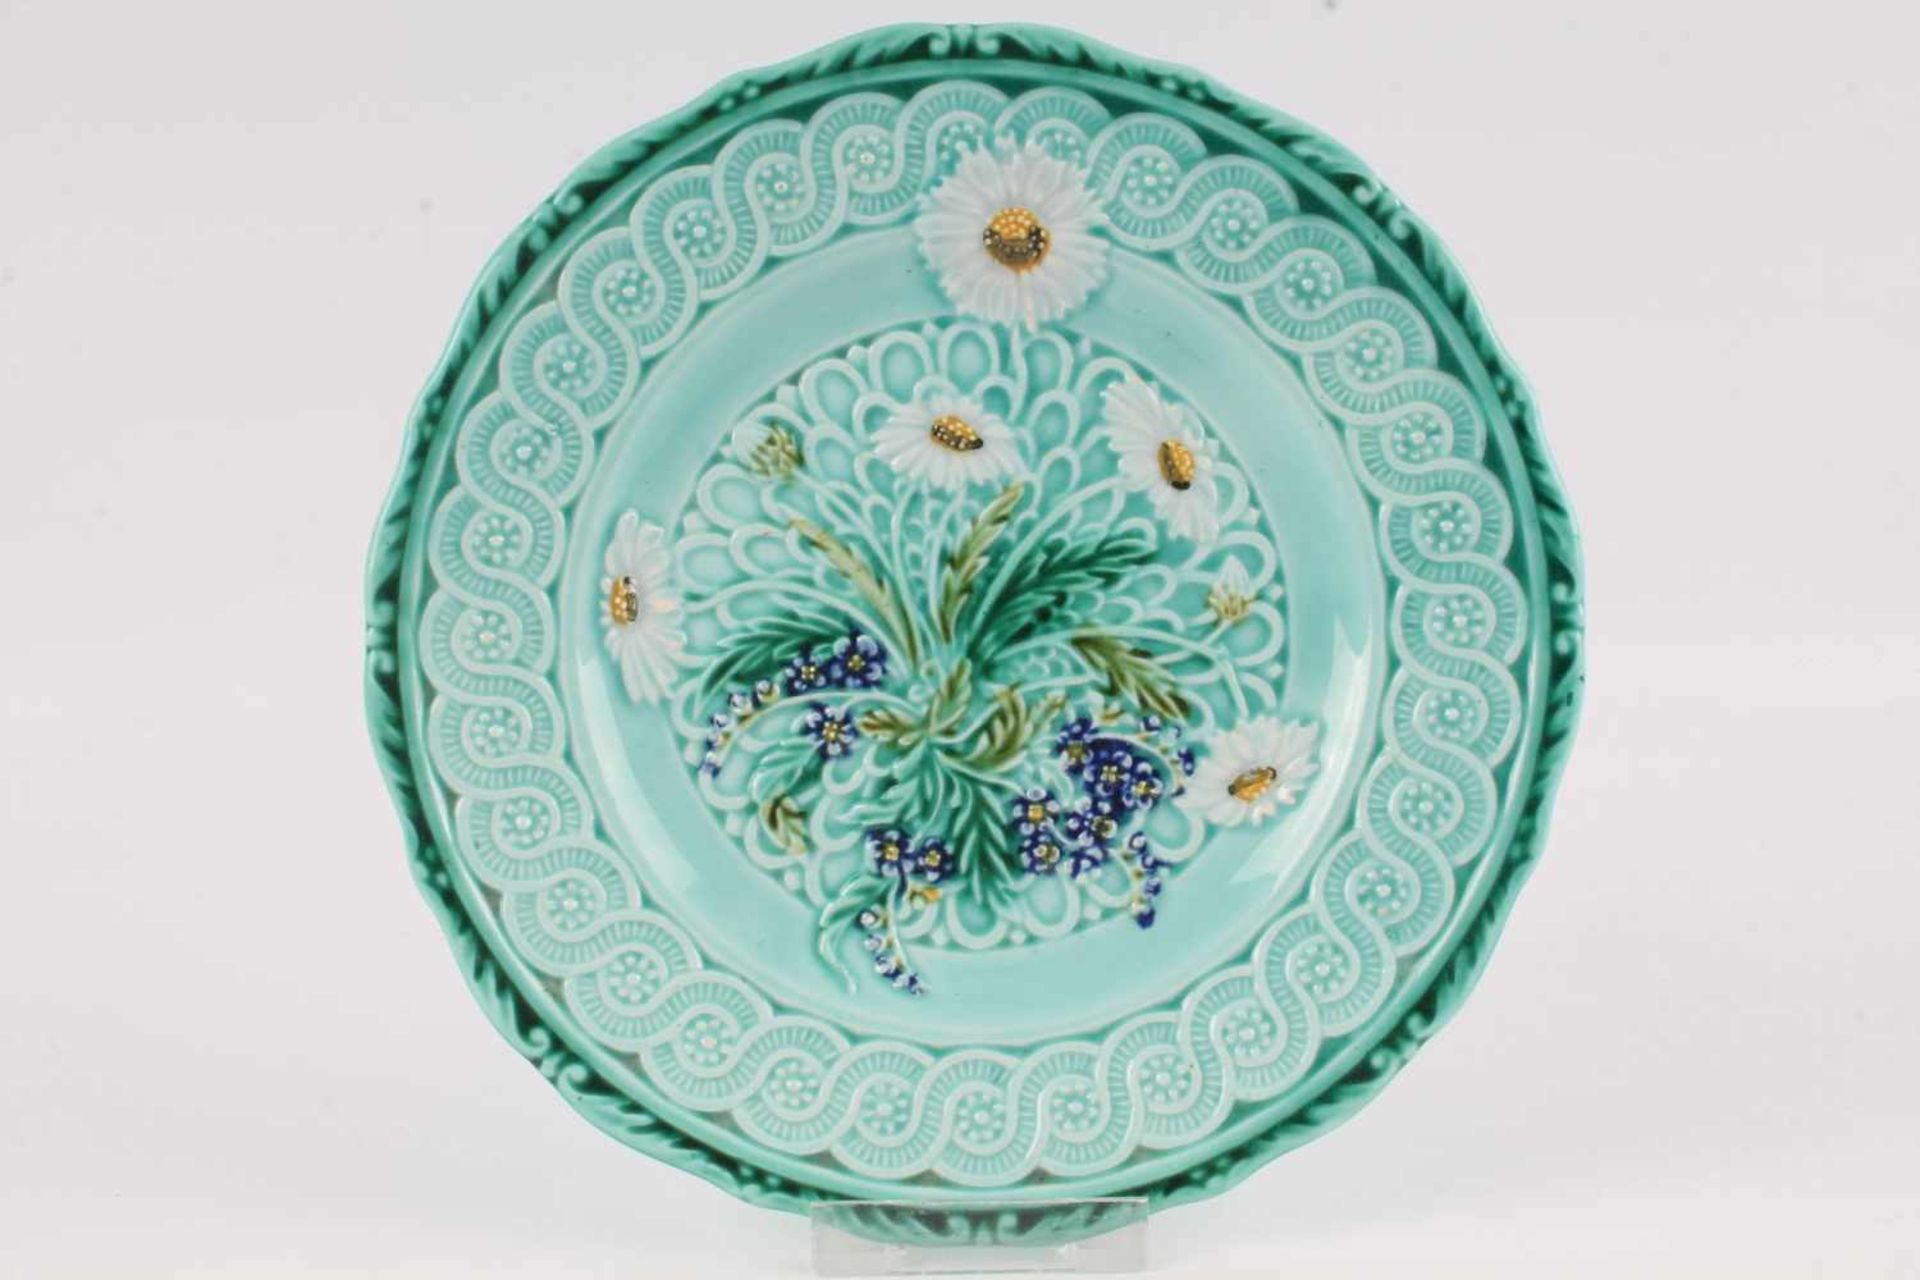 Villeroy & Boch Jugendstil Tafelaufsatz mit 5 Tellern, art nouveau bowl with 5 plates, - Bild 2 aus 6